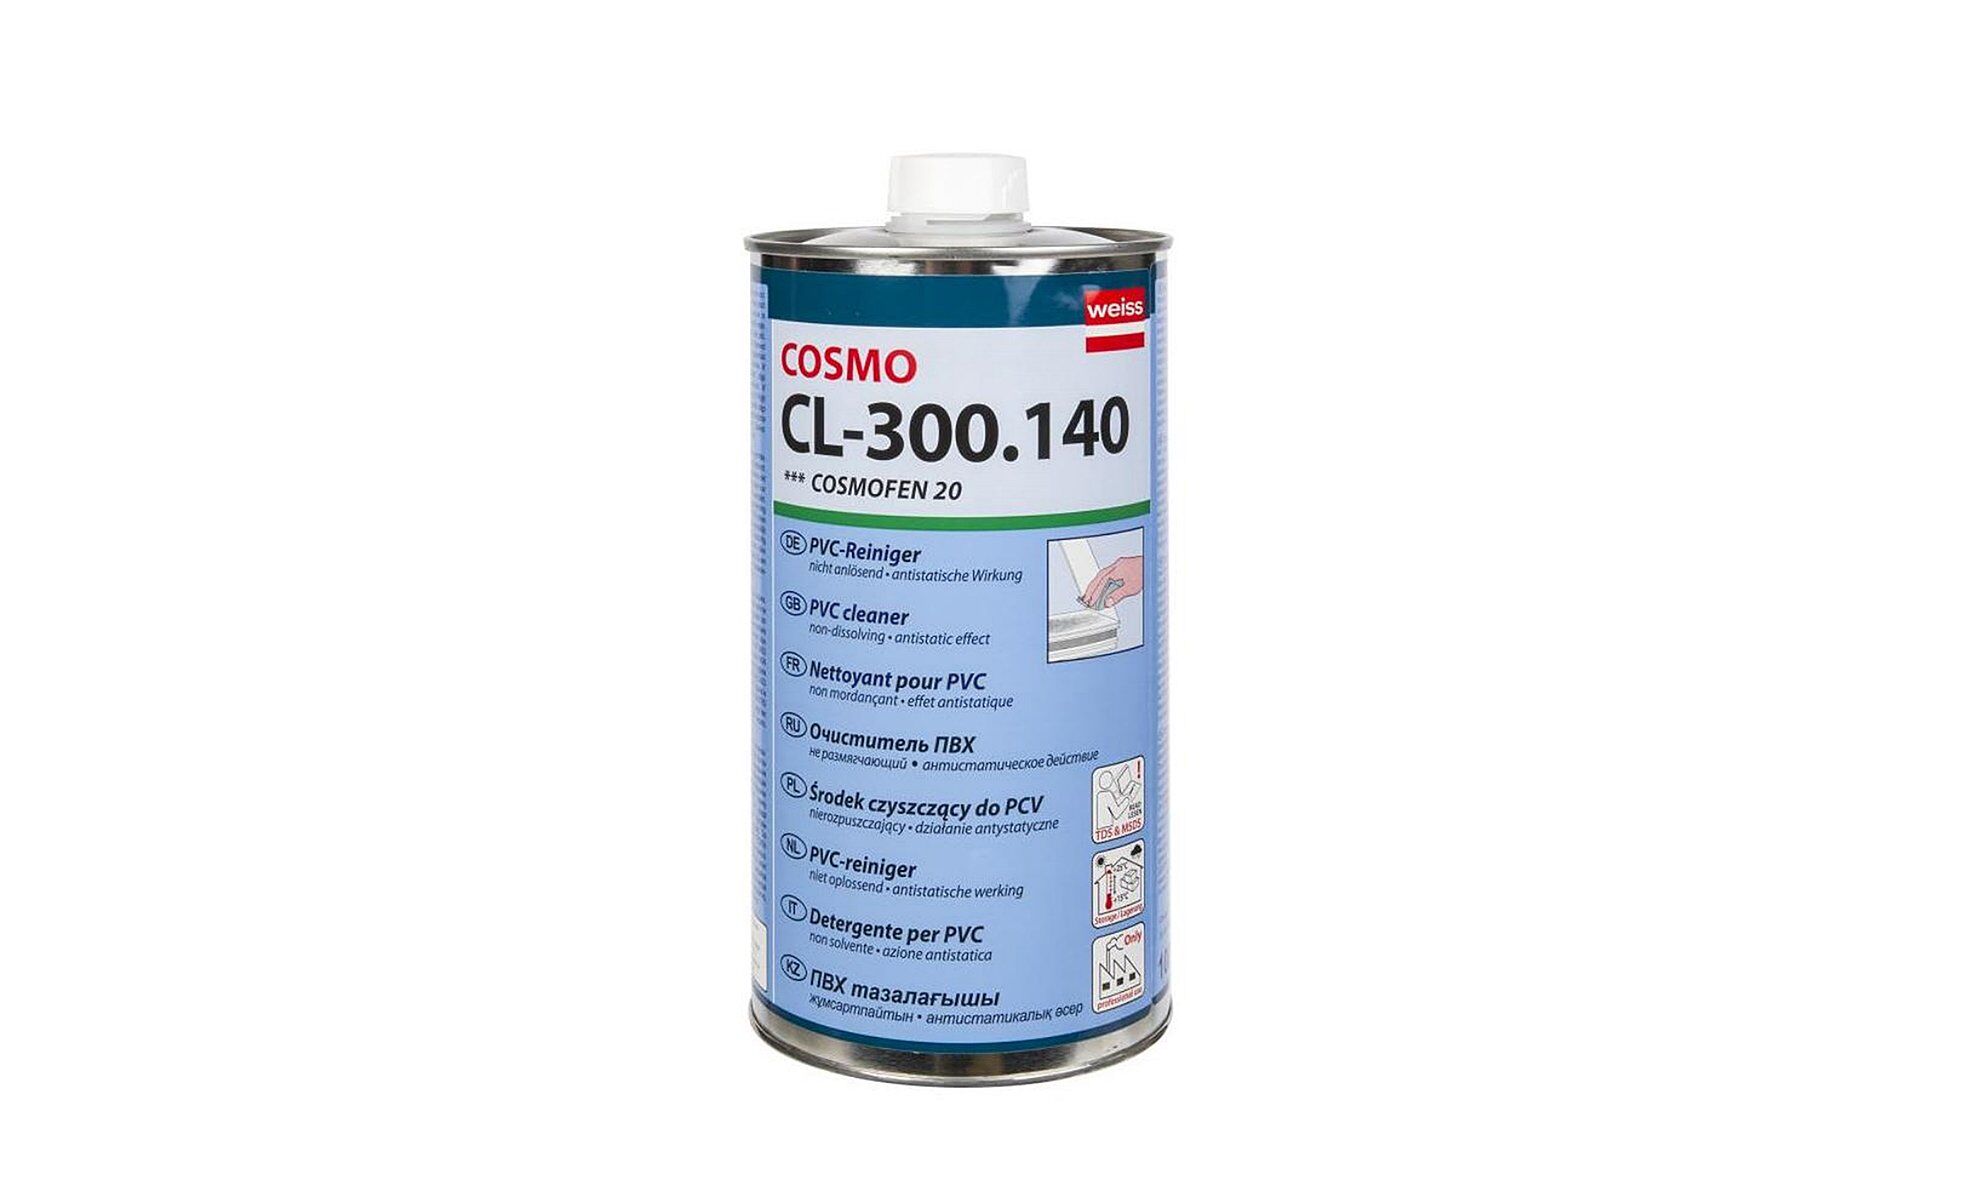 Очиститель Cosmofen 20 (Cosmo CL-300.140), 1 л